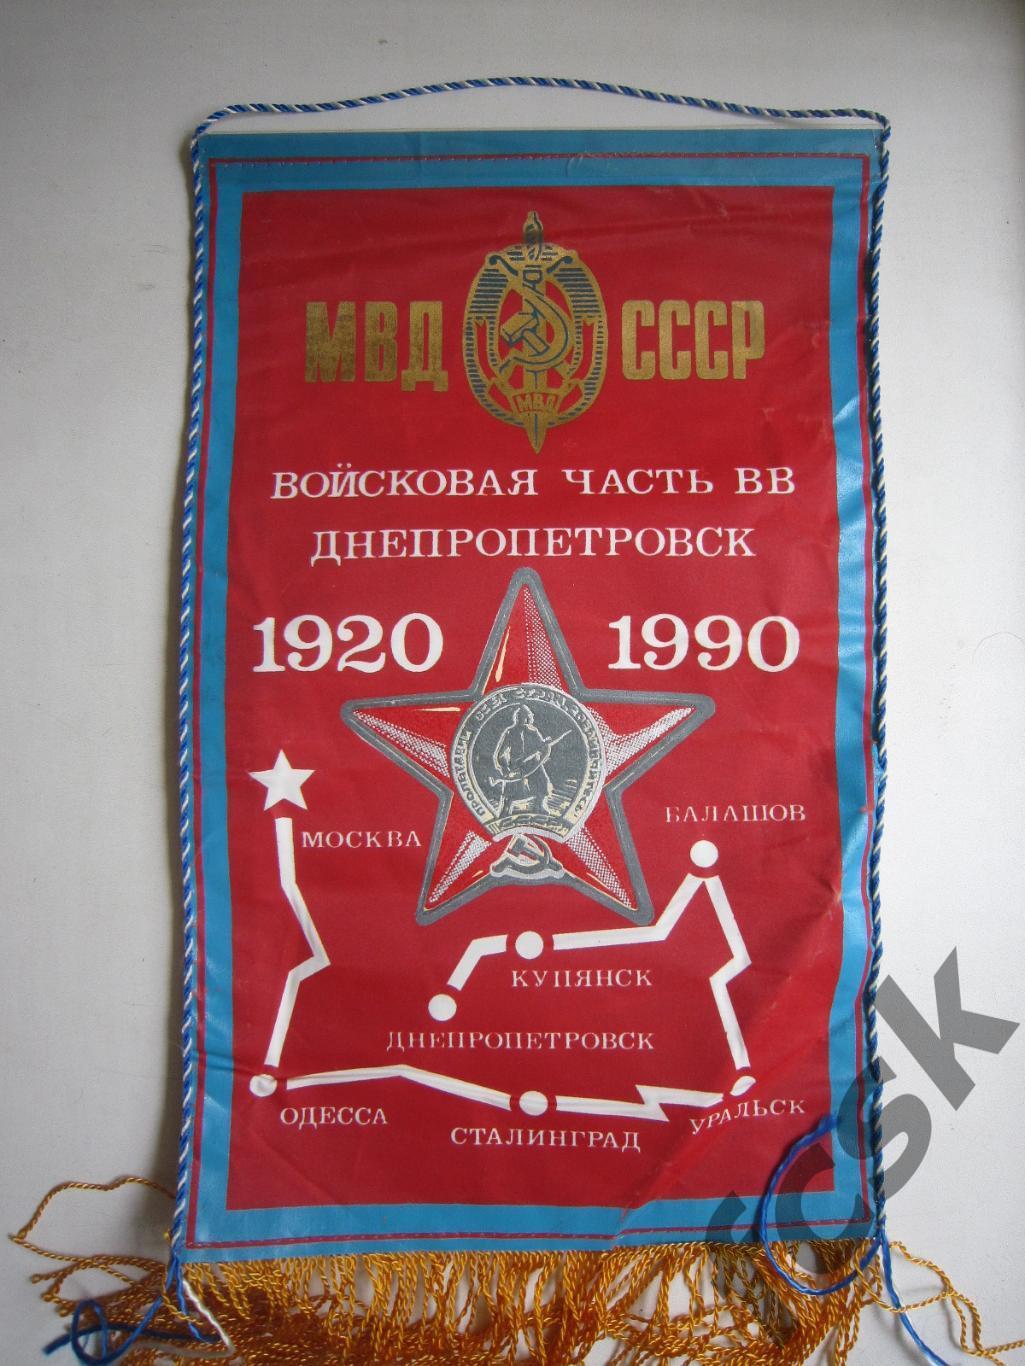 МВД СССР Войсковая часть ВВ Днепропетровск 1920 - 1990